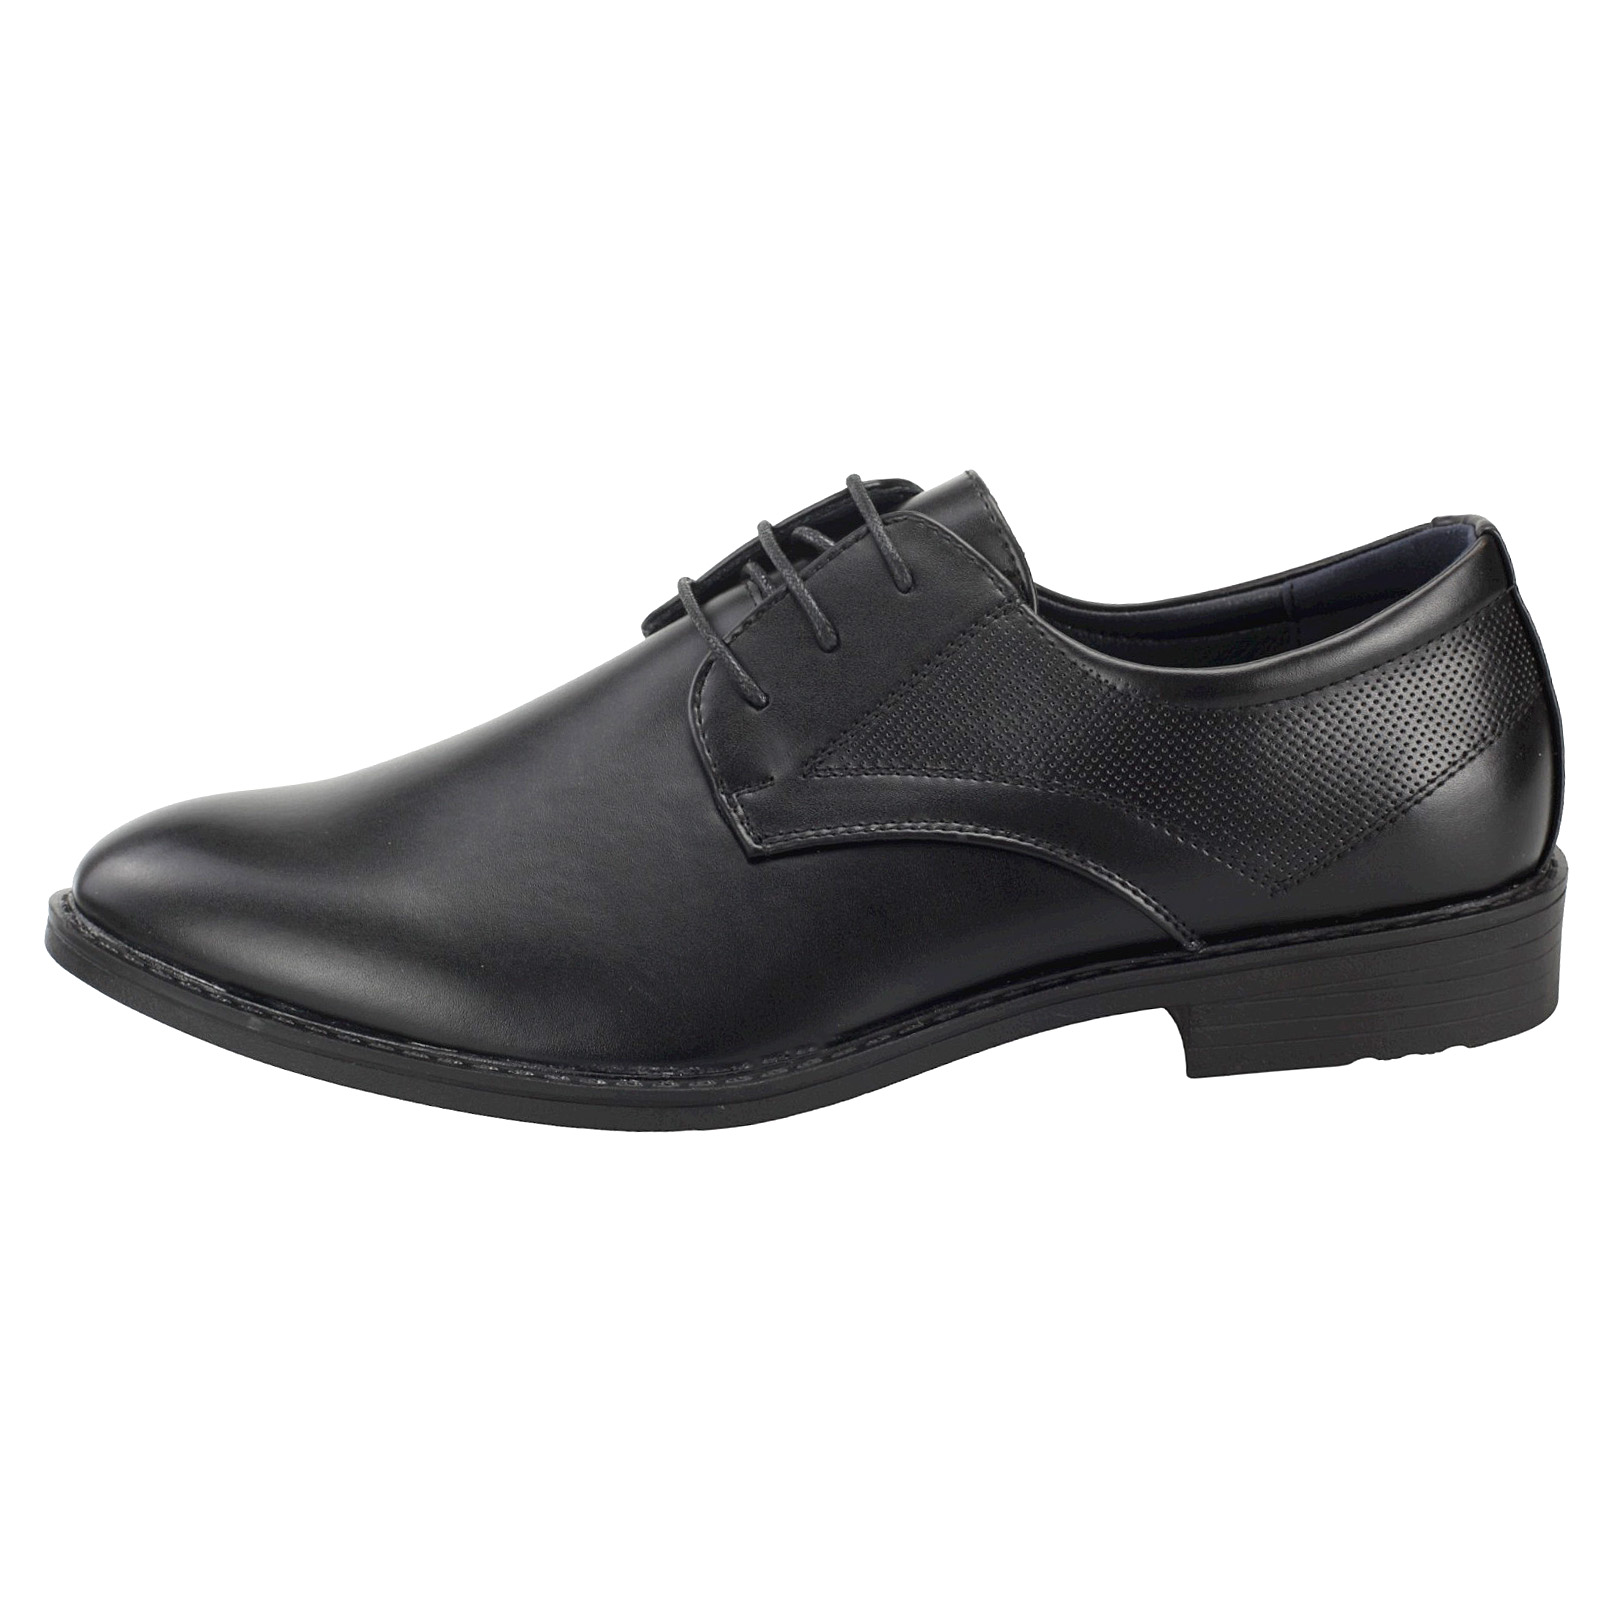 Stilvolle Herren Business Schuhe - Klassische Derby Halbschuhe mit Schnürung für den perfekten Auftritt 1314